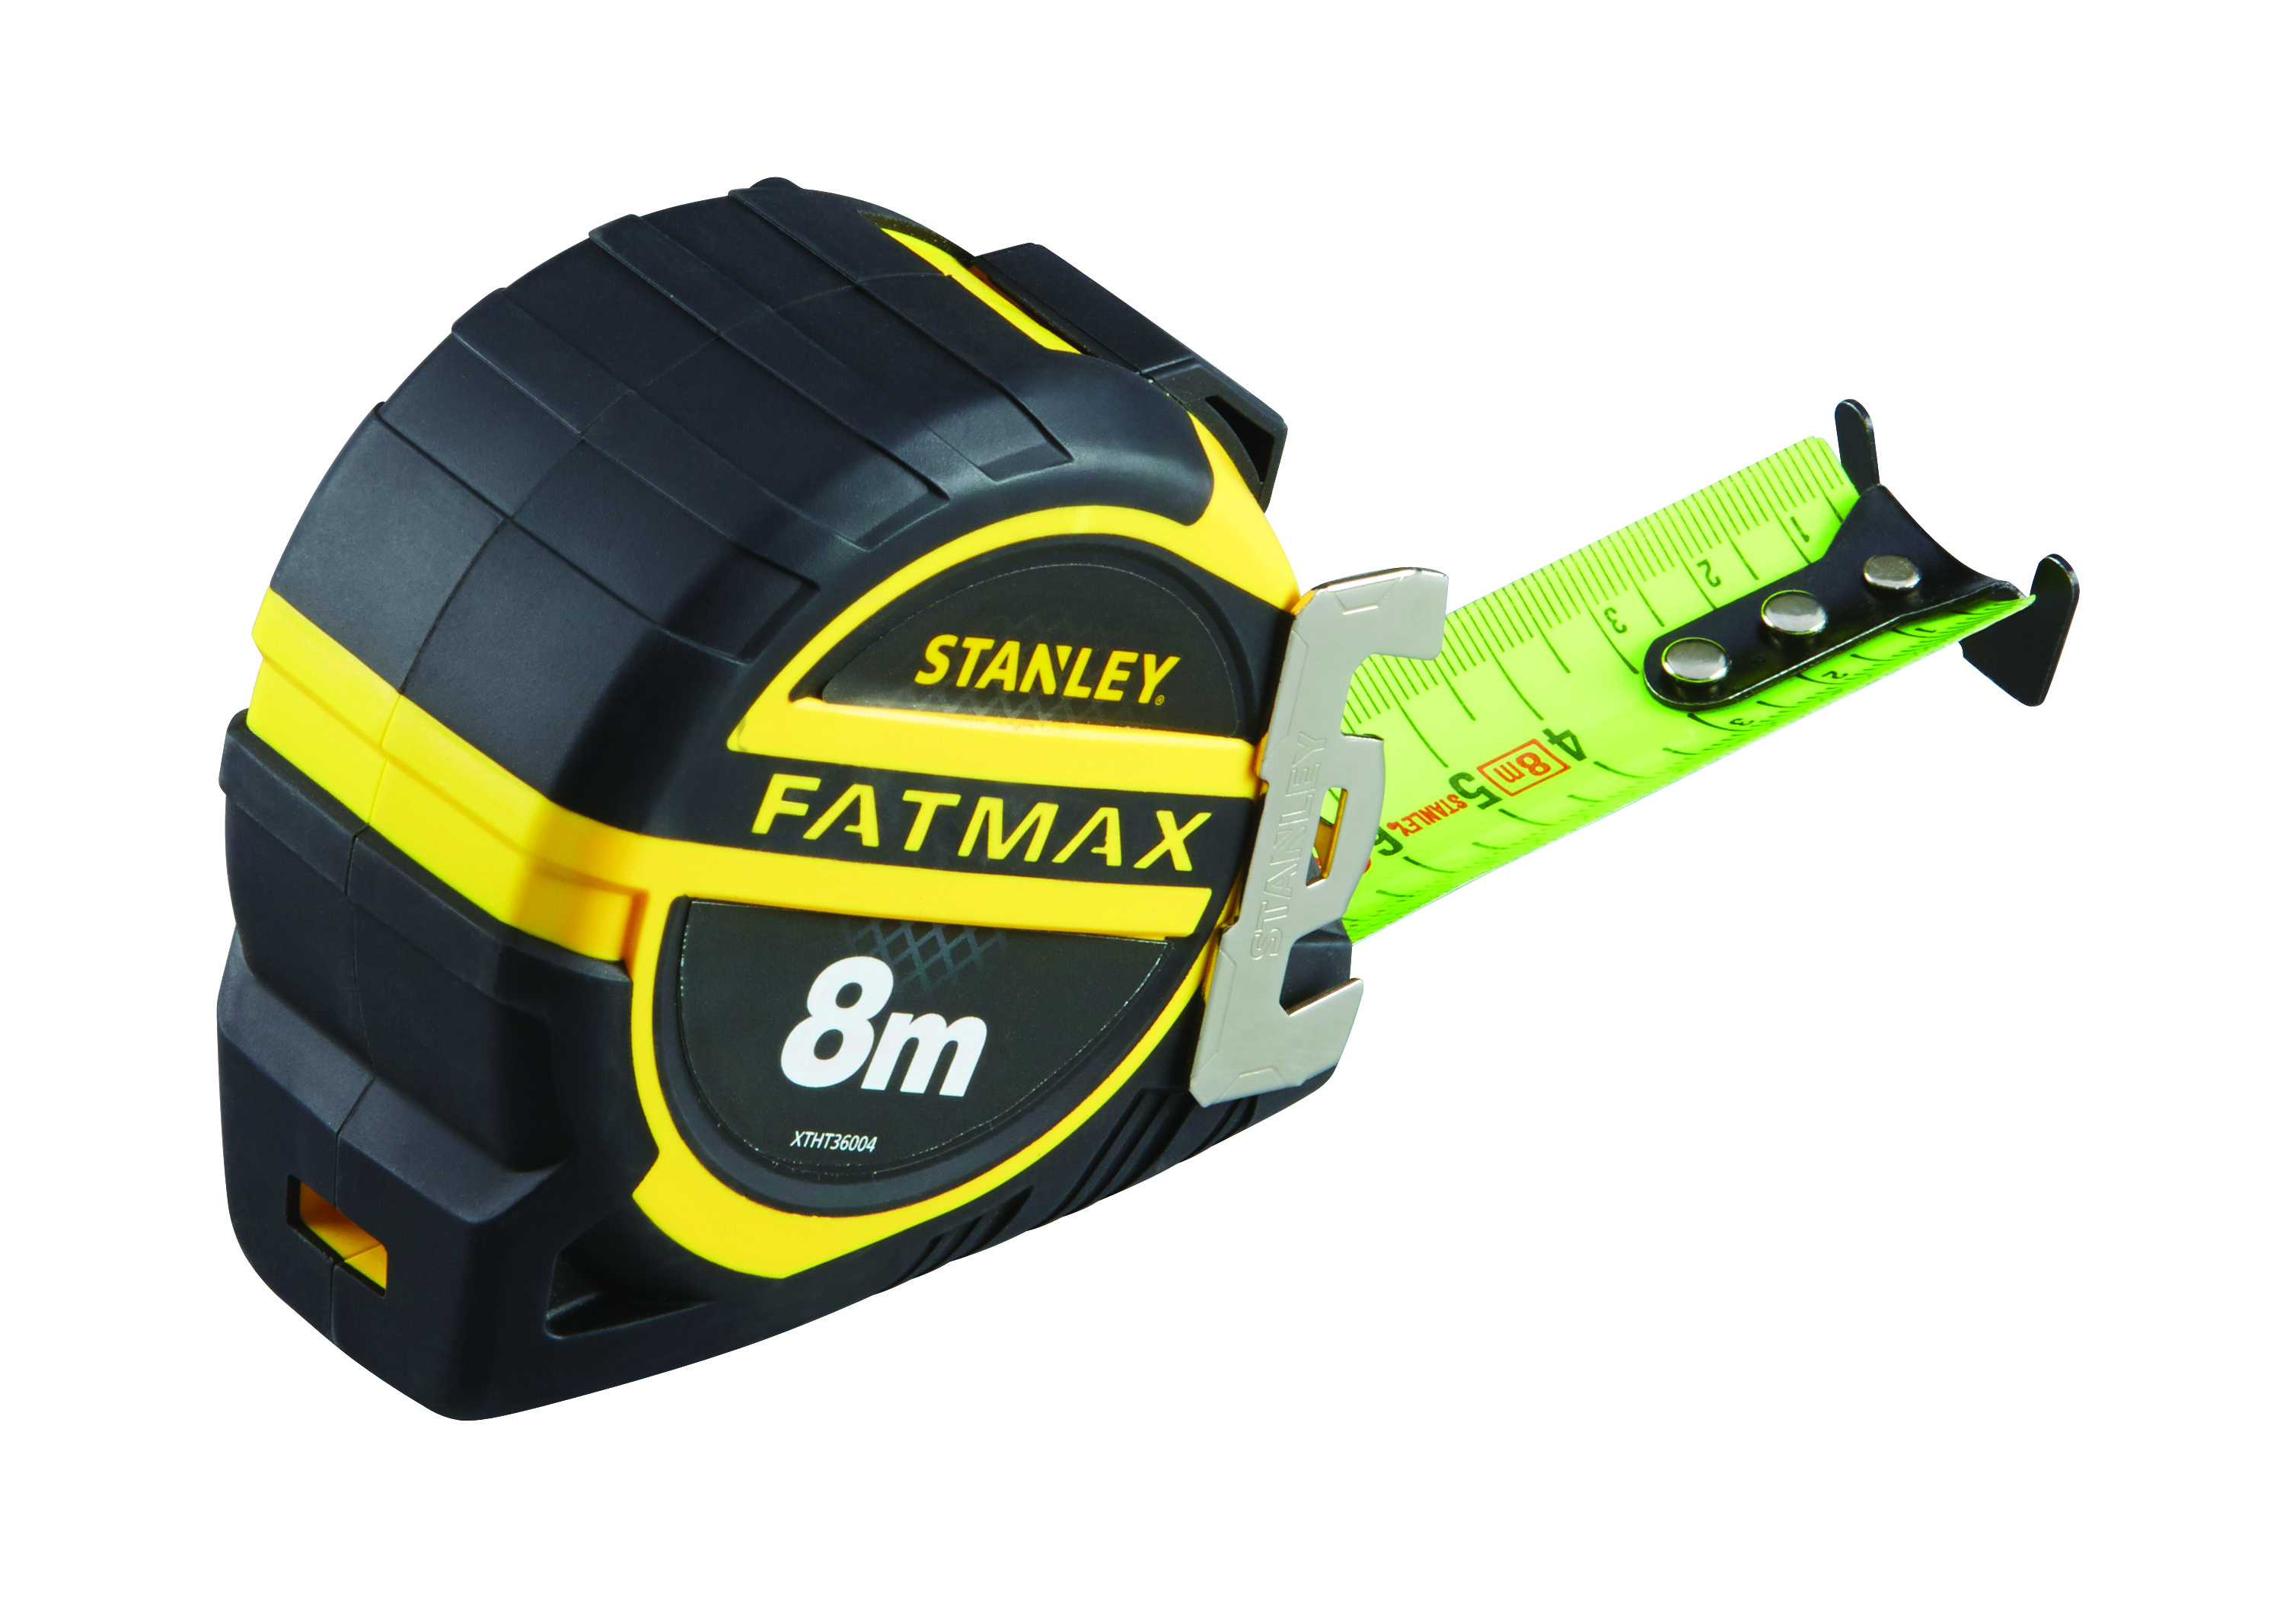 Fatmax Pro Rolbandmaat 8m - 32mm